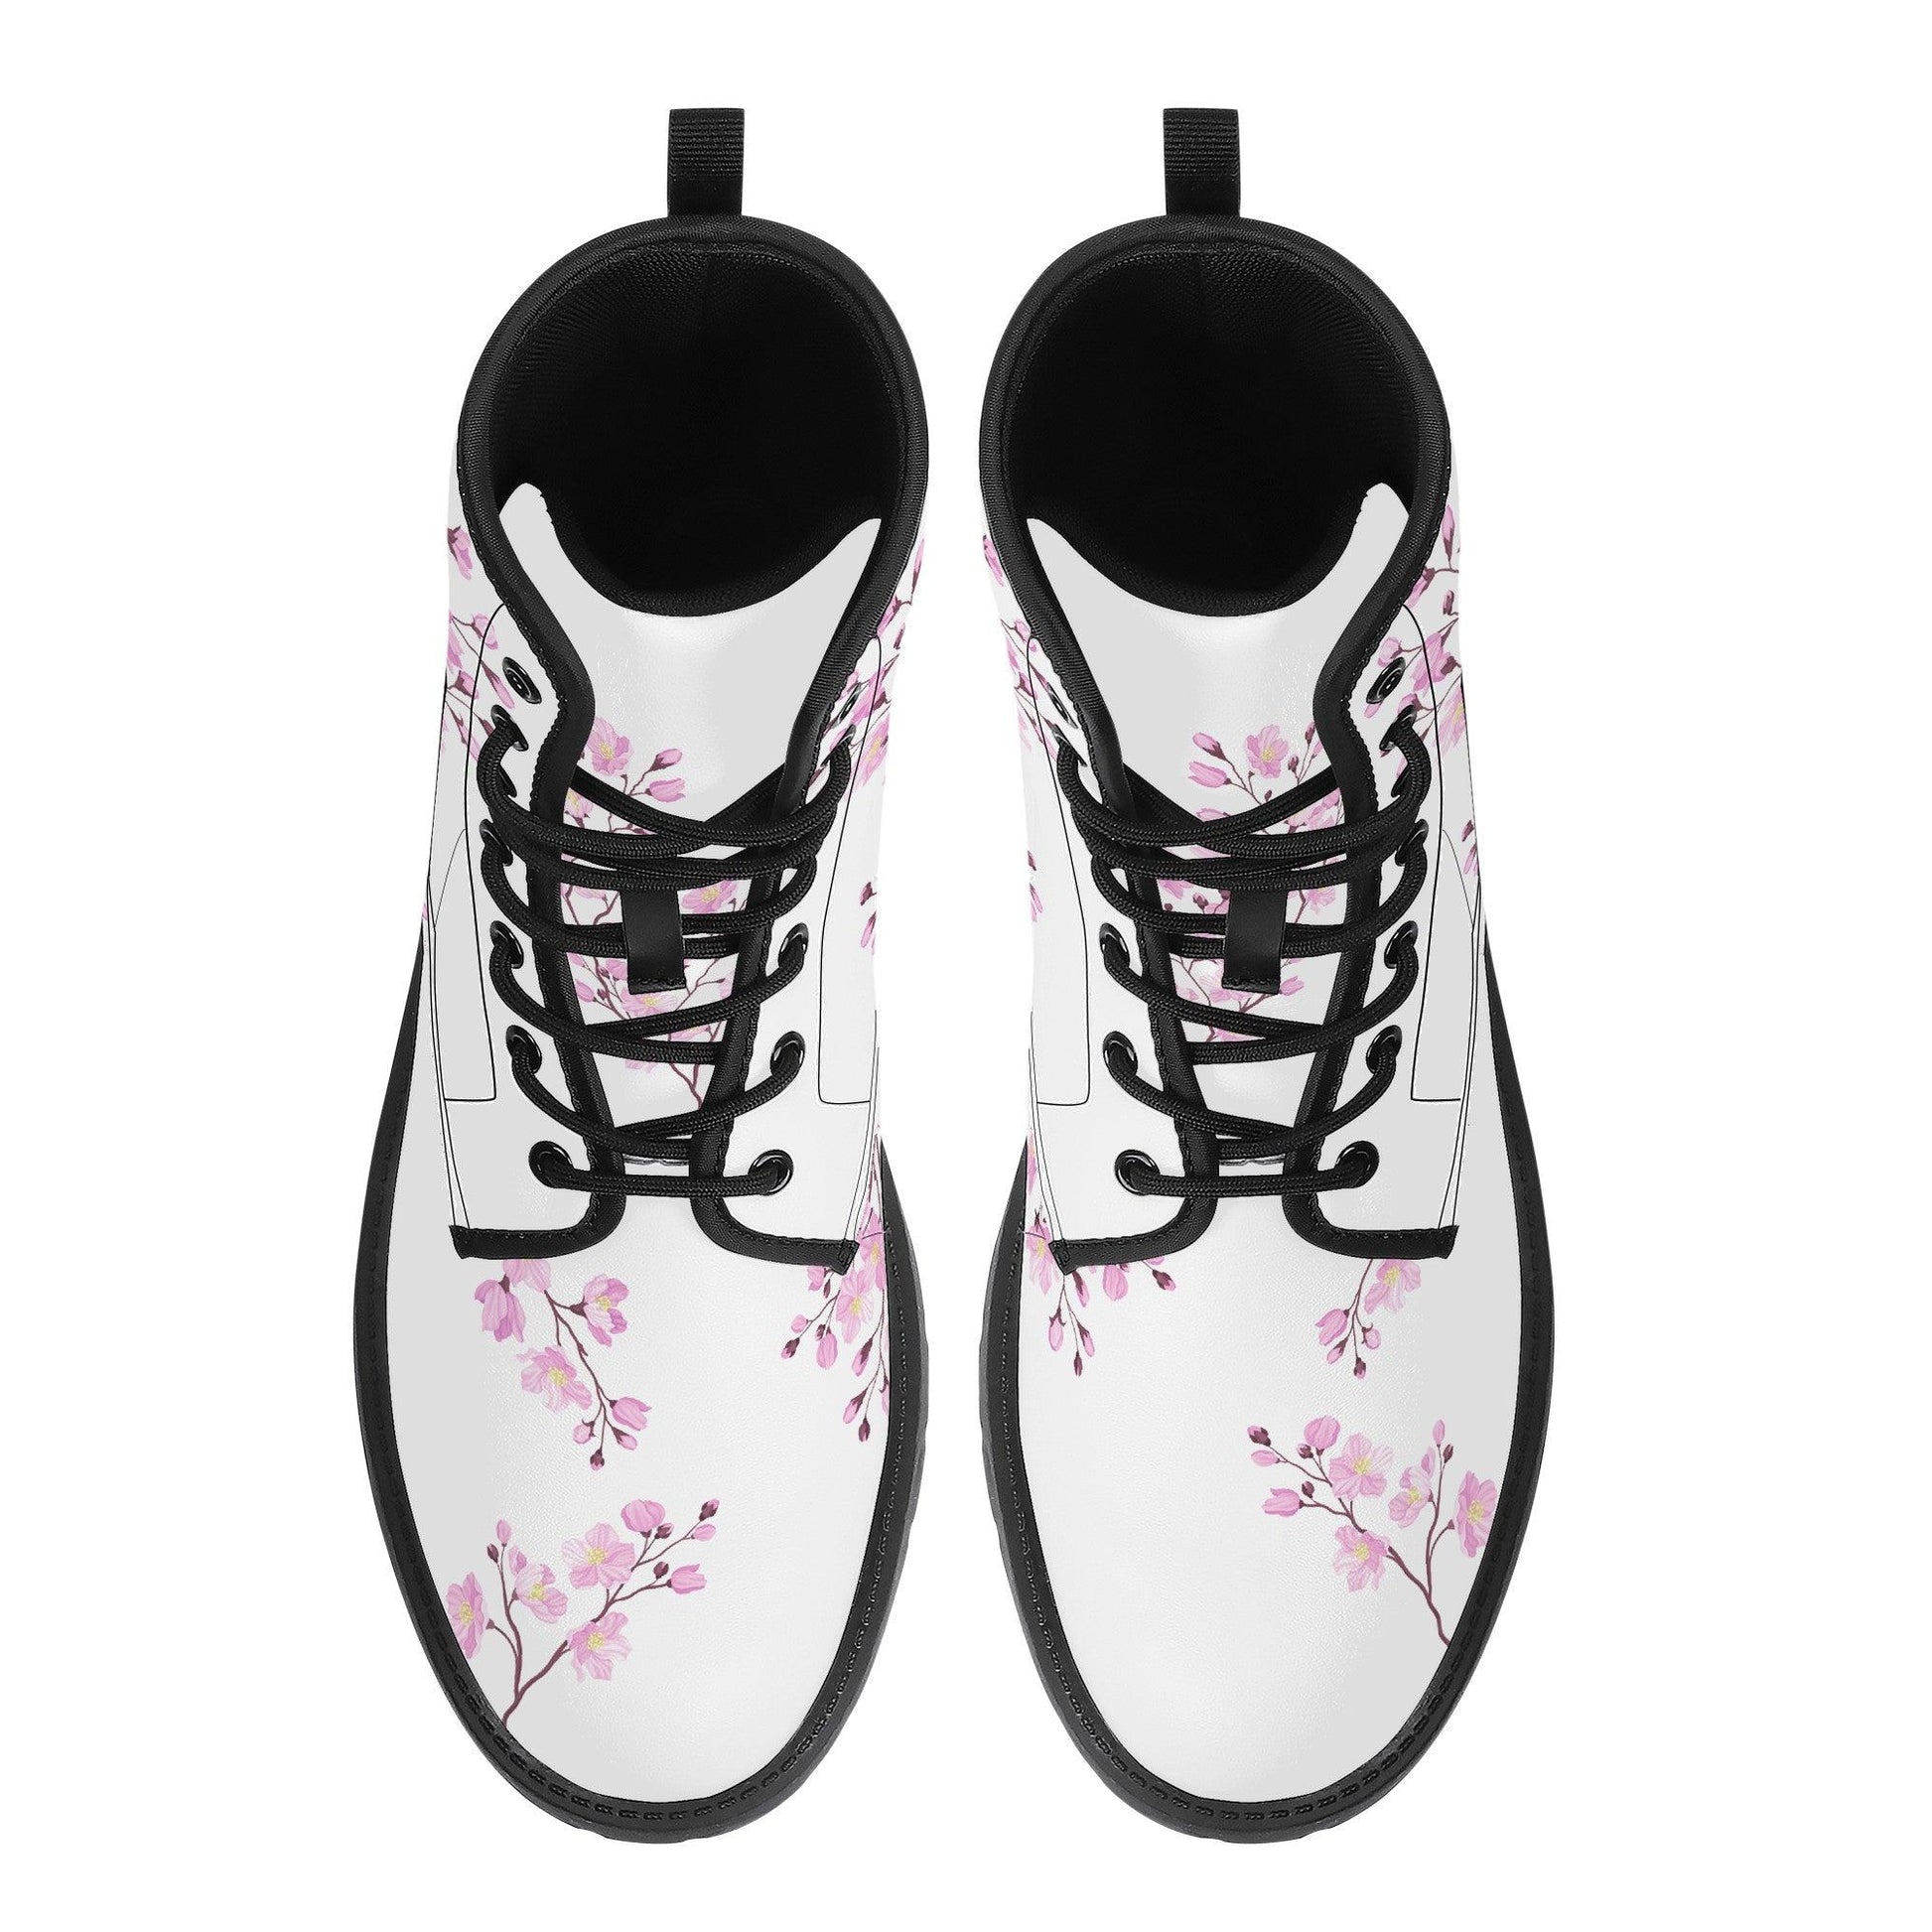 Snow White Sakura Vegan Leather Boots